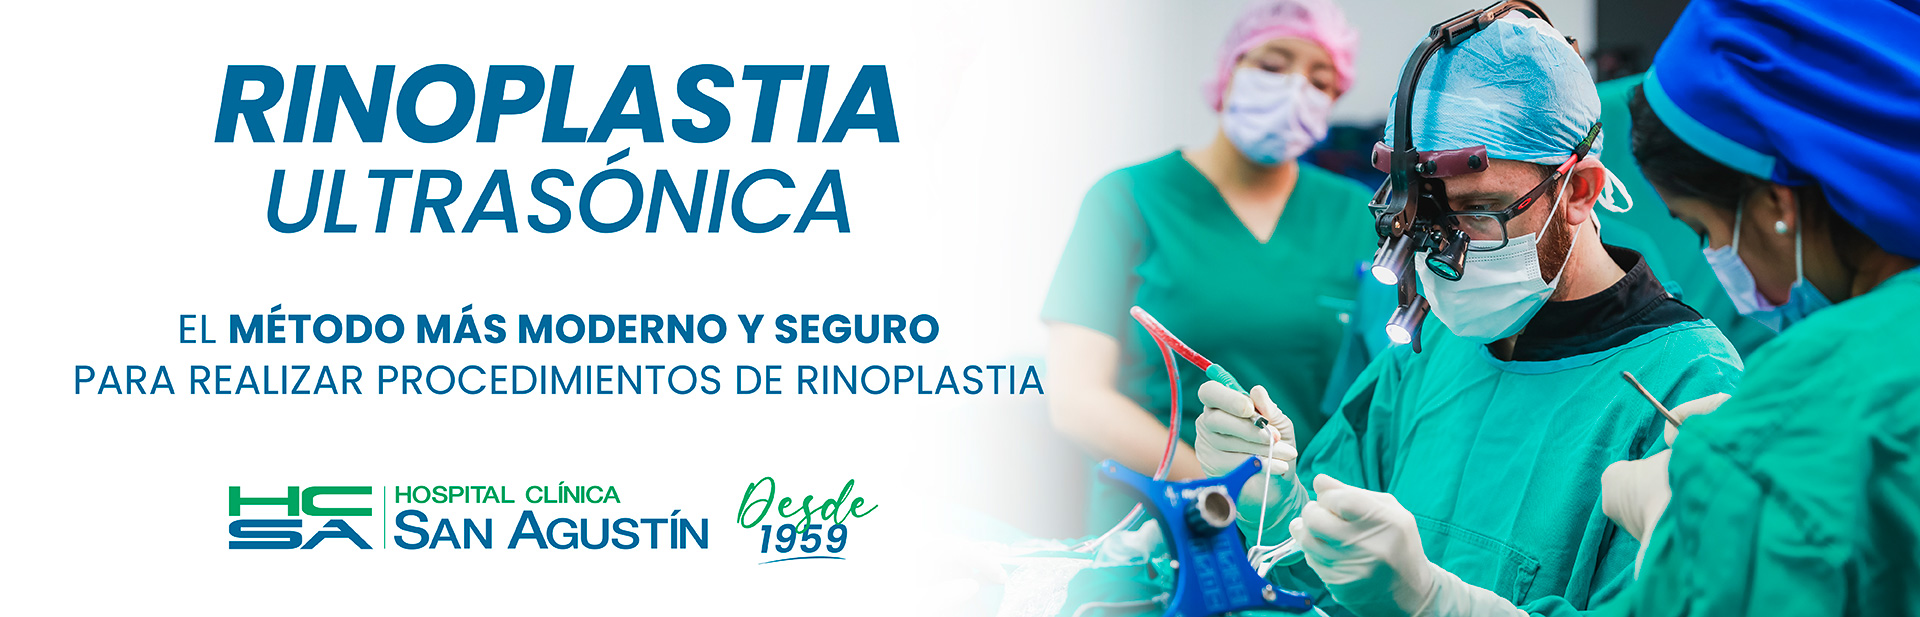 Rinoplastia Ultrasónica | Hospital Clínica San Agustín